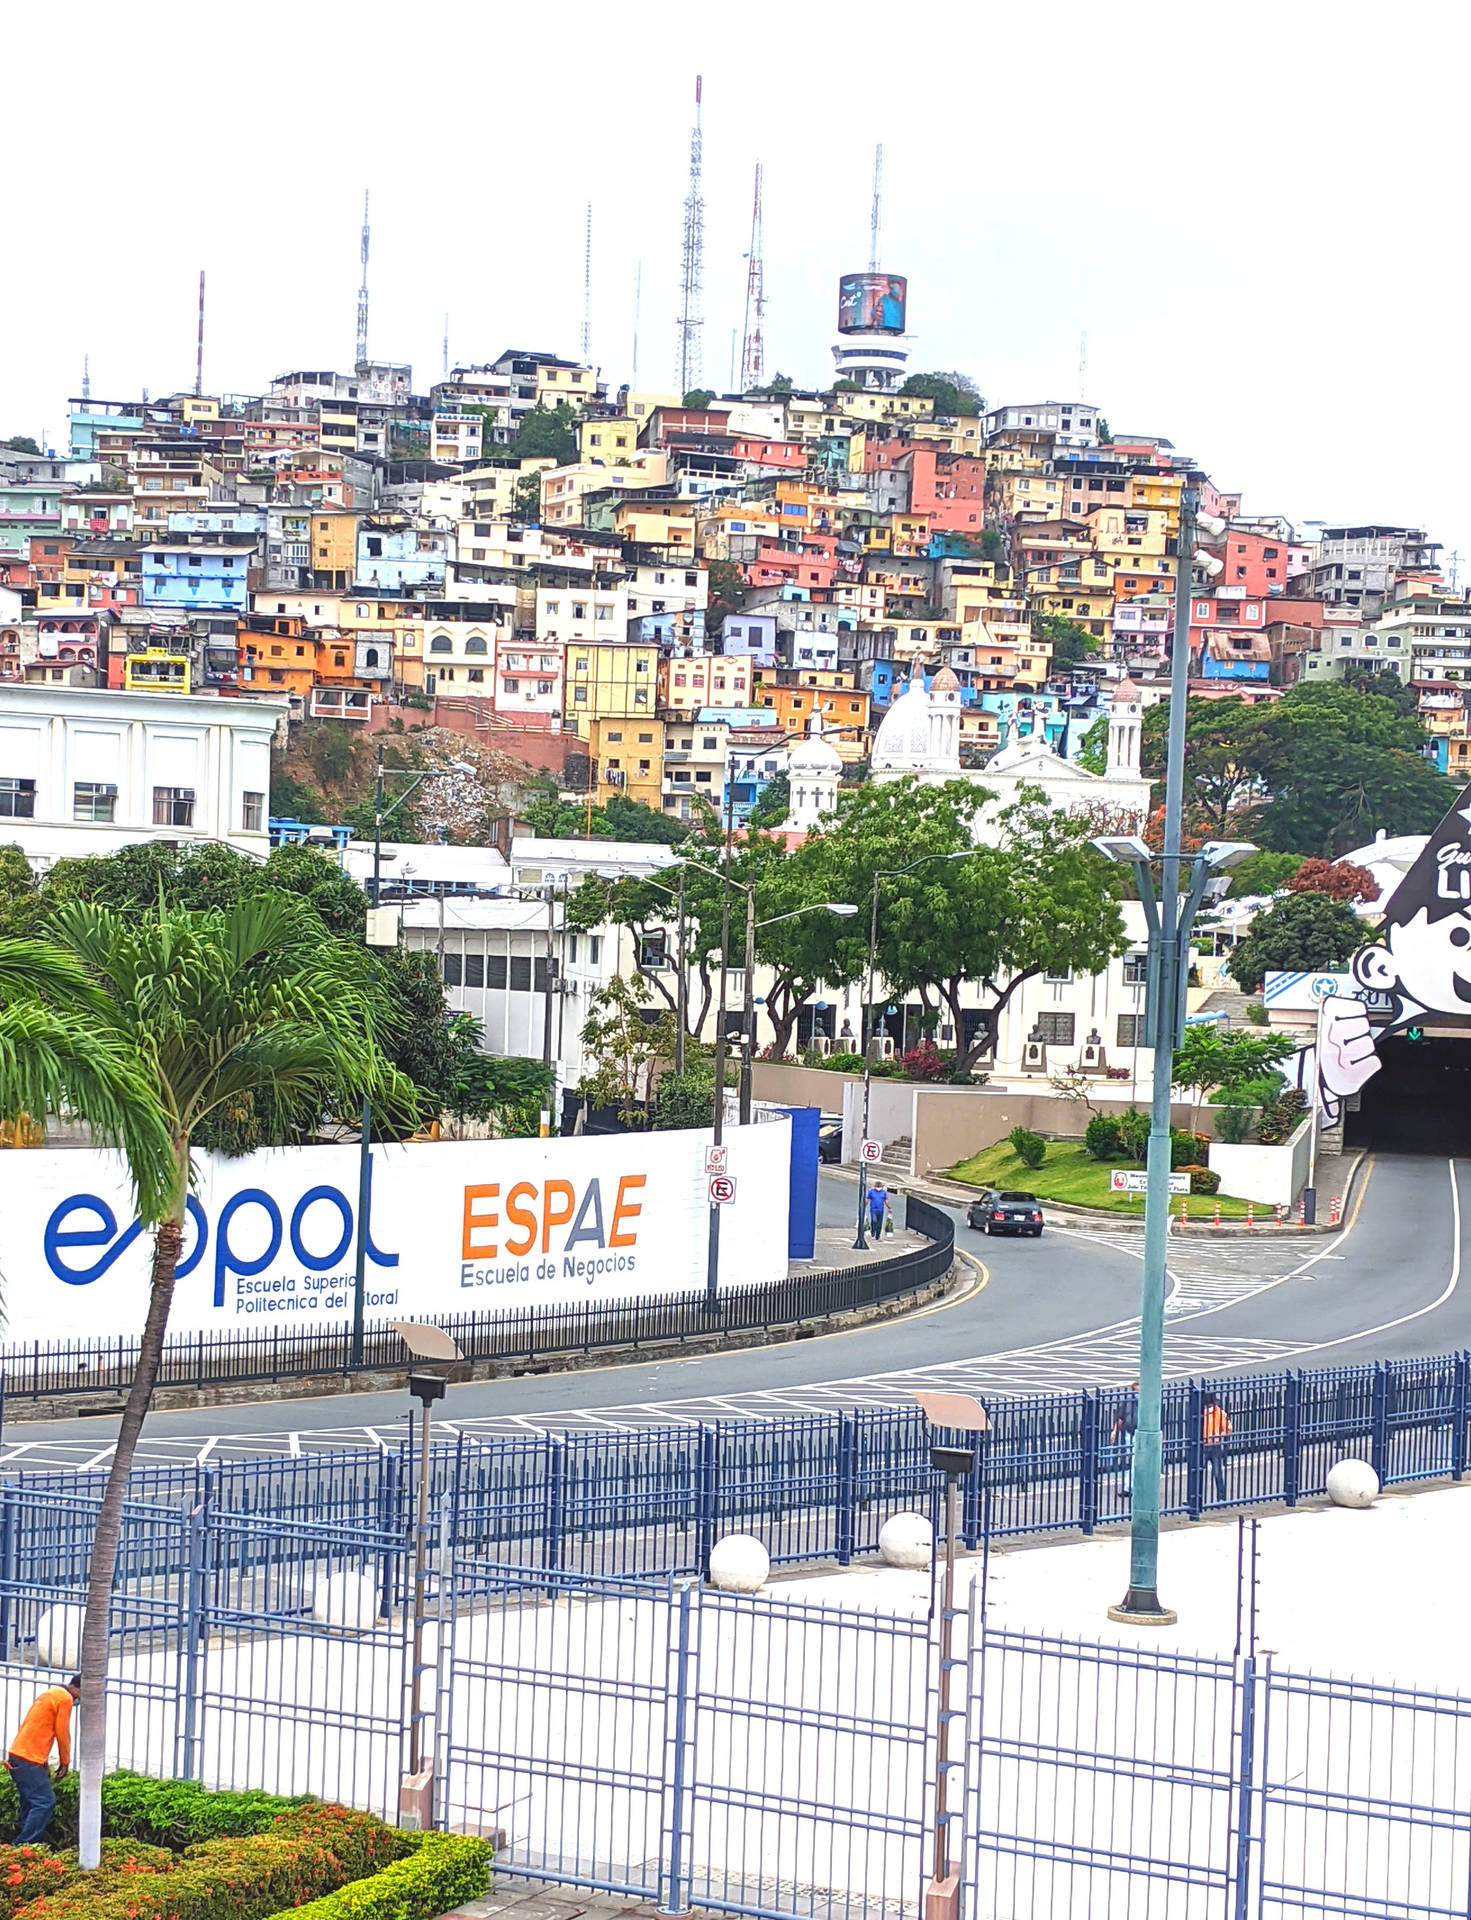 Ecuador Guayaquil City Wallpaper